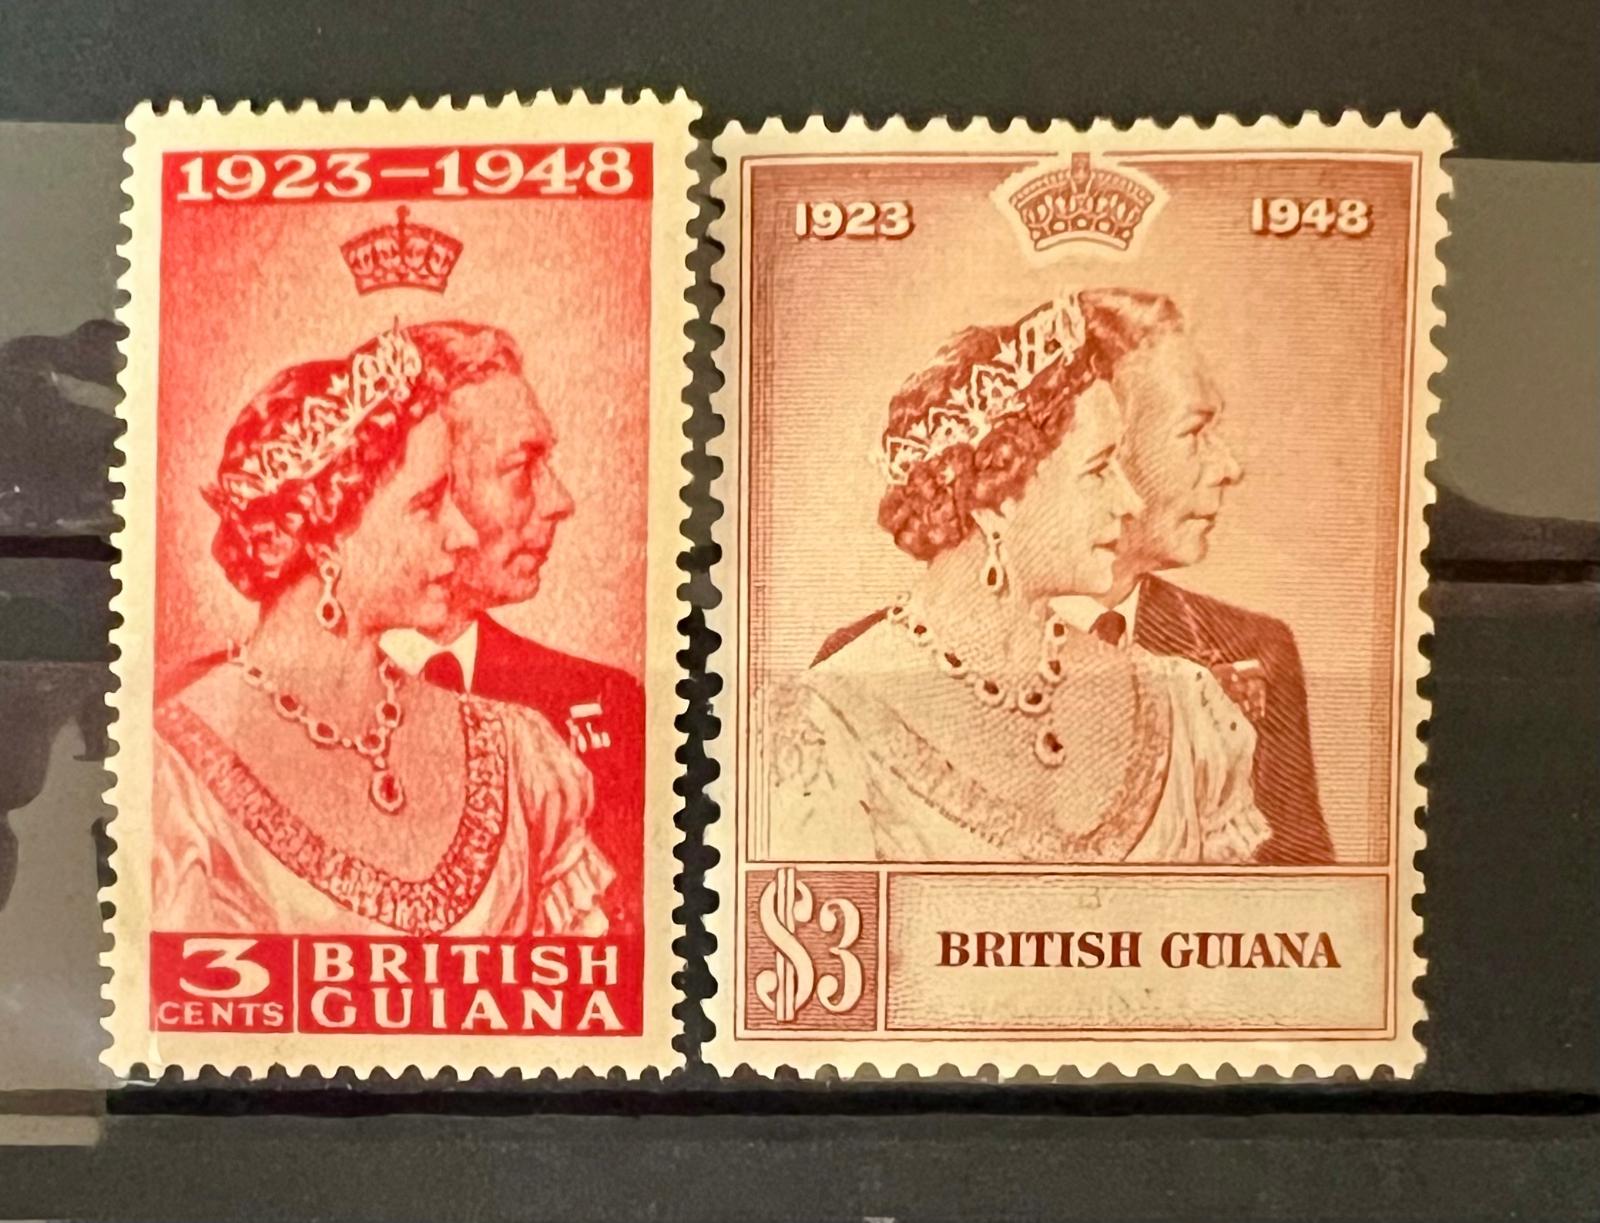 ANGLICKÉ KOLÓNIE - GEORGE VI. * BRITISH GUIANA 1948 SILVER WEDDING - Známky